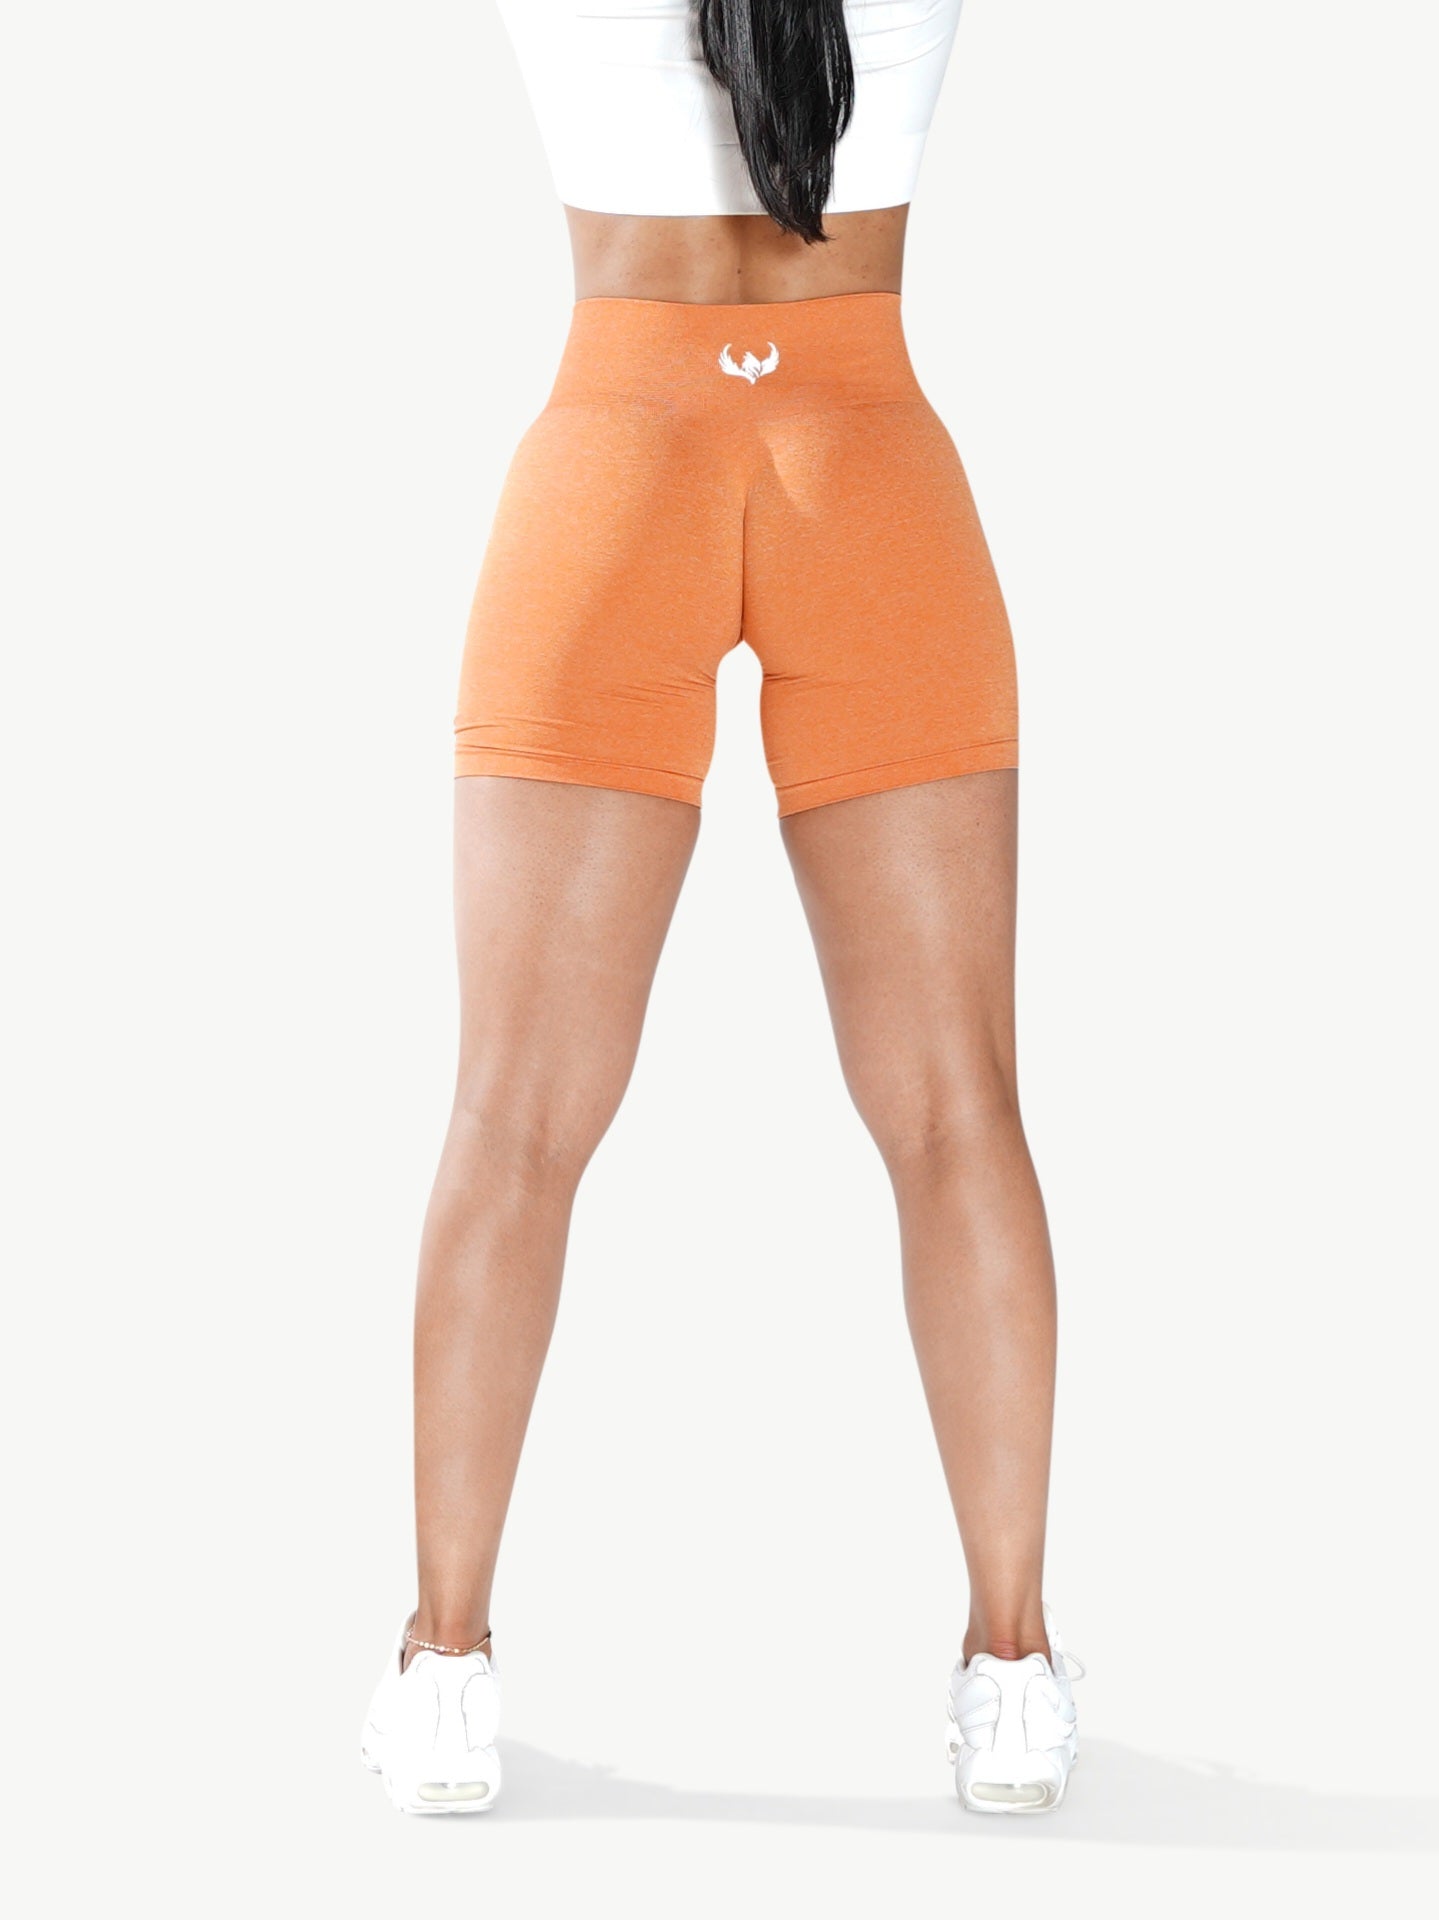 PNX -  NKD Shorts - Orange